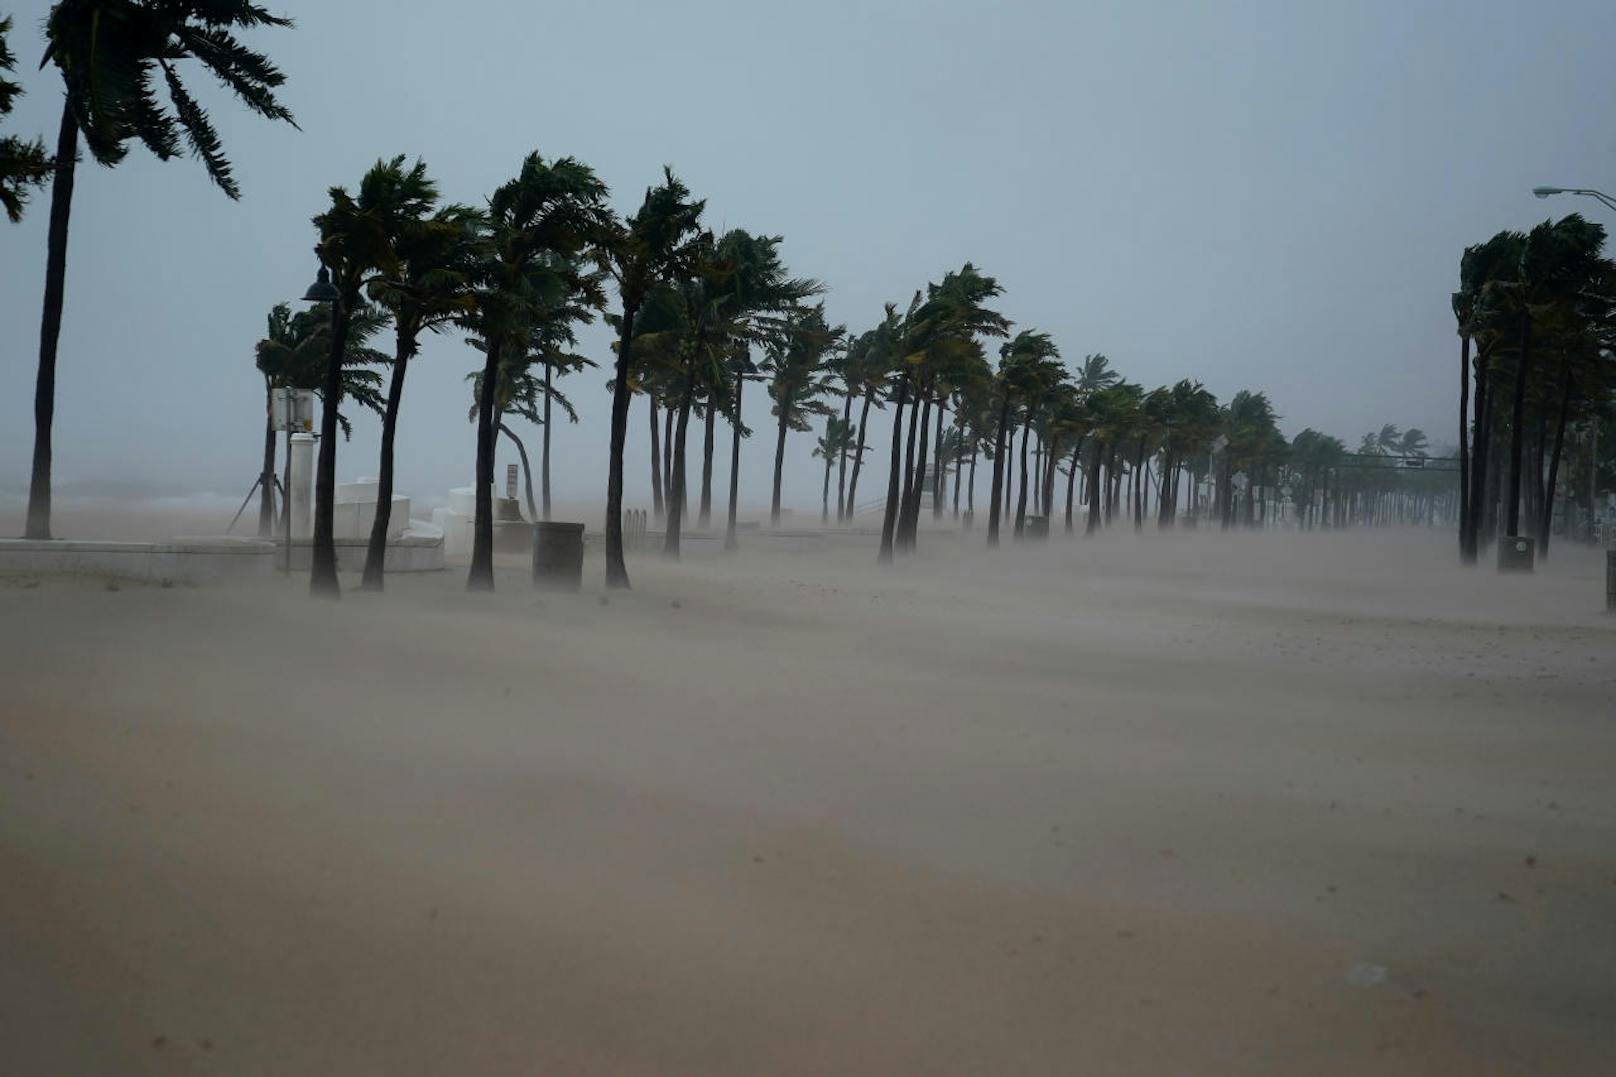 Hurrikan "Irma" löste am Strand von Fort Lauderdale einen regelrechten Sandsturm aus.